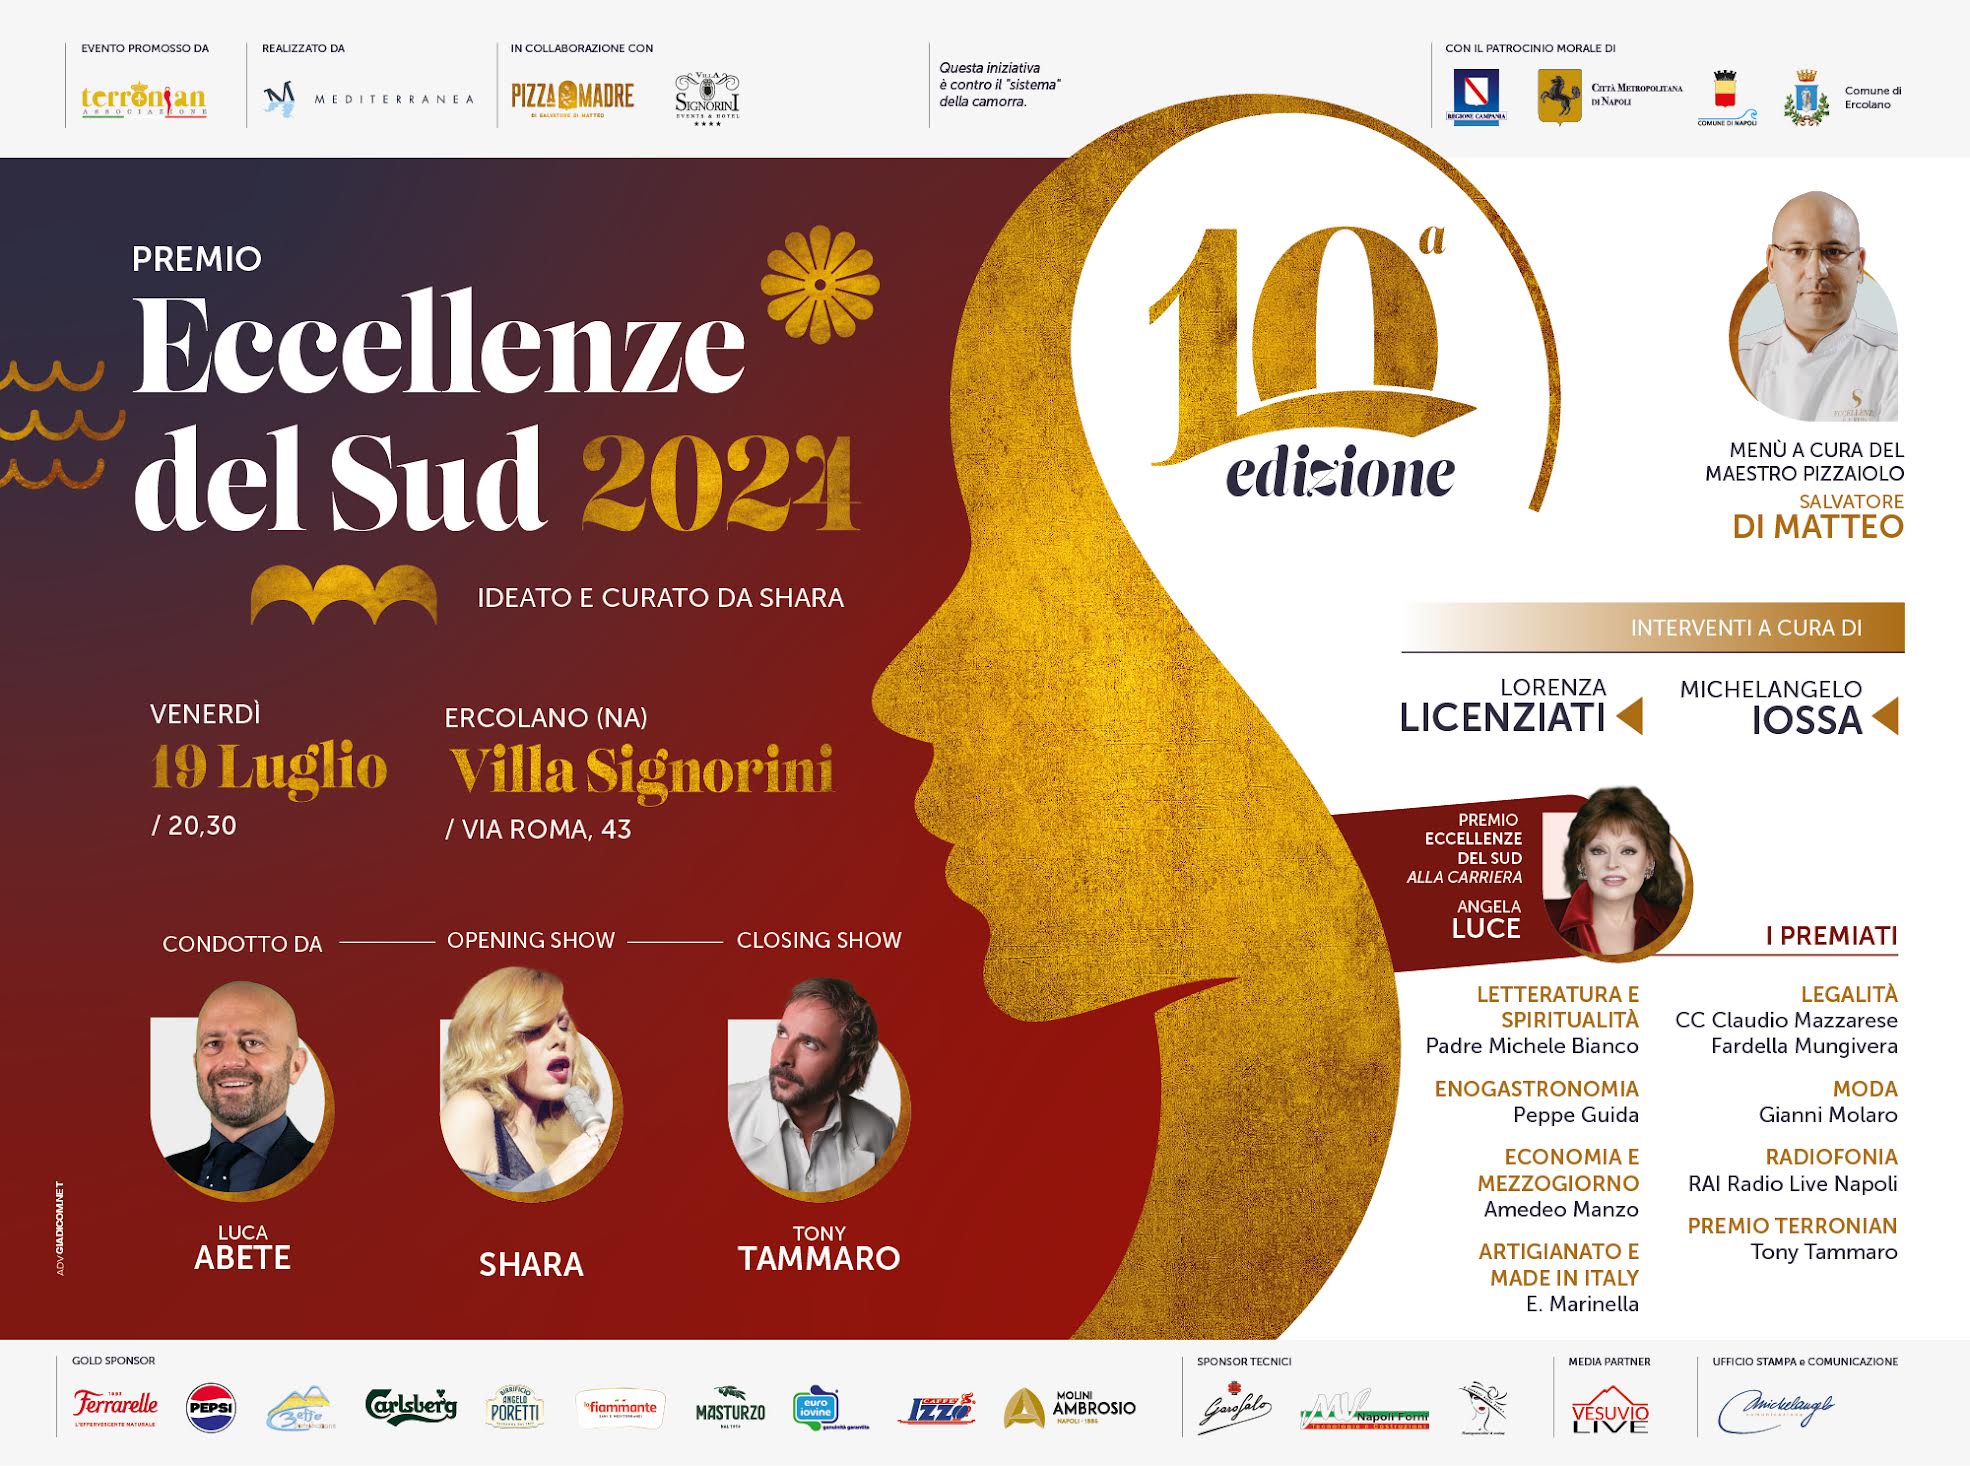 La monumentale VILLA SIGNORINI di Ercolano (NA) ospita la decima edizione del prestigioso PREMIO ECCELLENZE DEL SUD VENERDÌ 19 LUGLIO 2024